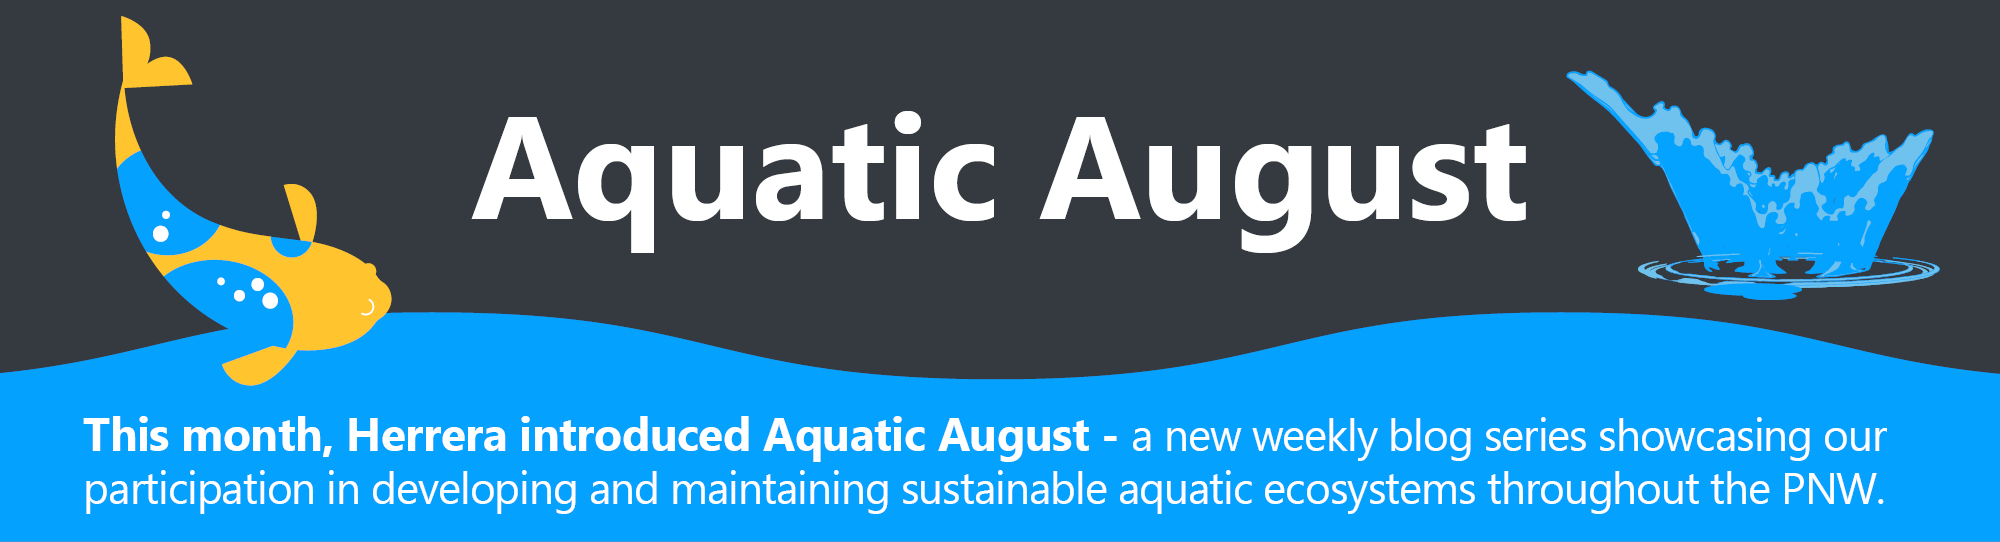 Q3-aquatic-august